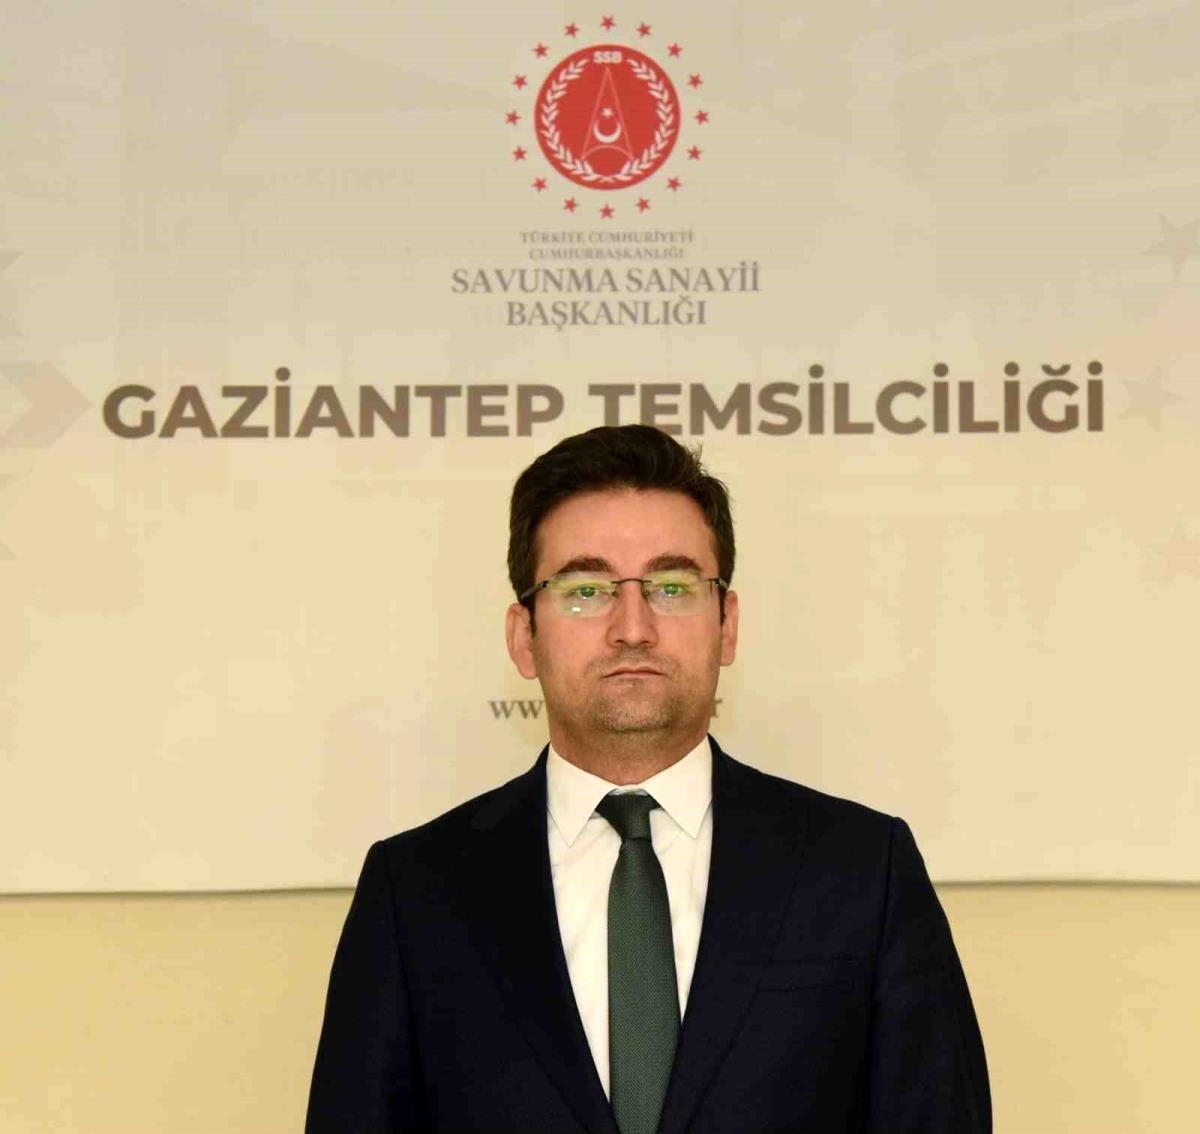 Savunma Sanayii Başkanlığı Gaziantep Temsilciliği'ne Ulutürk görevlendirildi